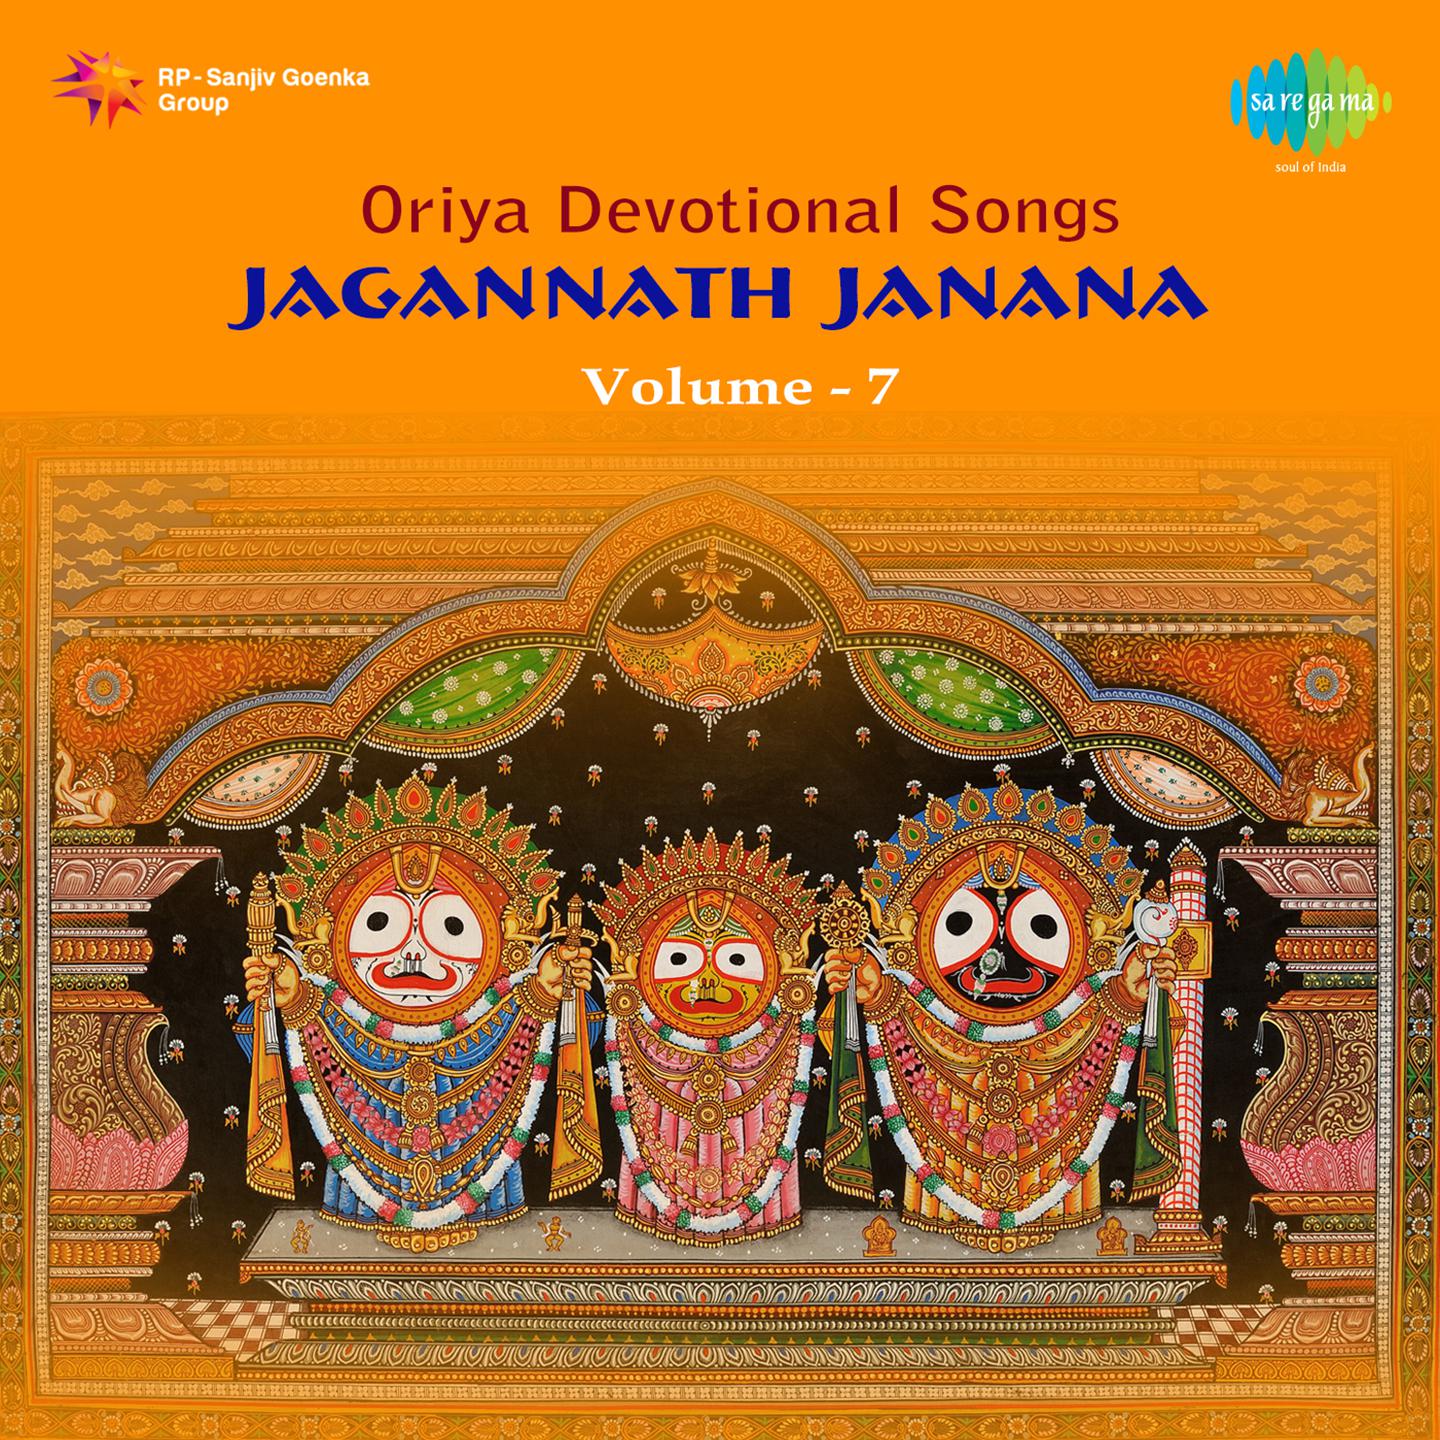 Jagannath Janana Oriya Devotional Volume 7